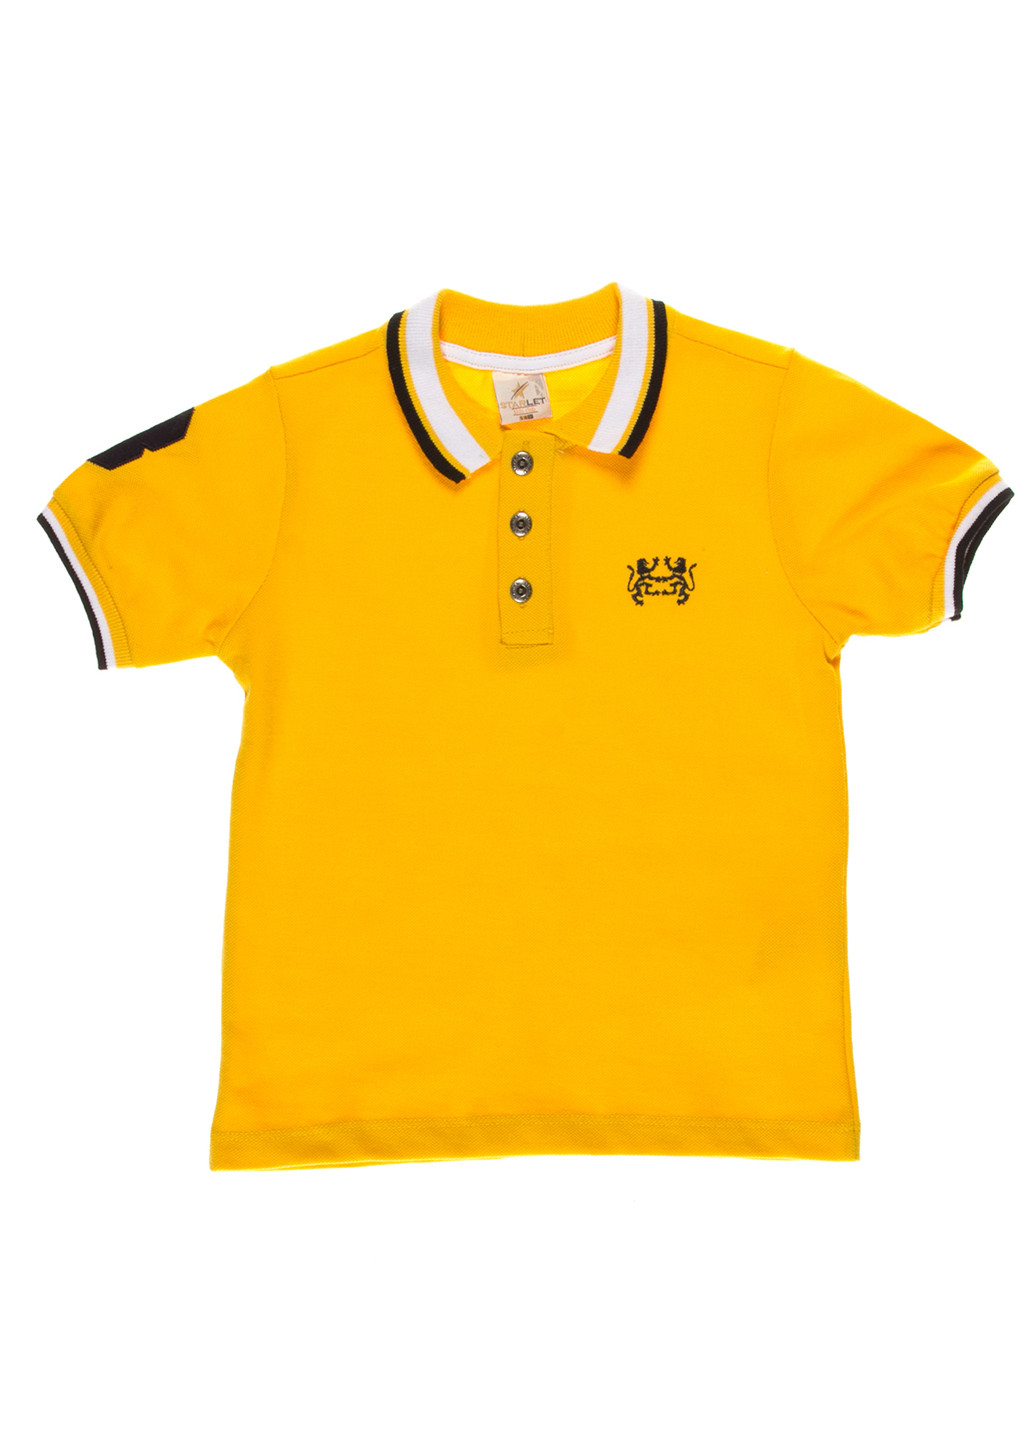 Желтая детская футболка-поло для мальчика Starlet с логотипом